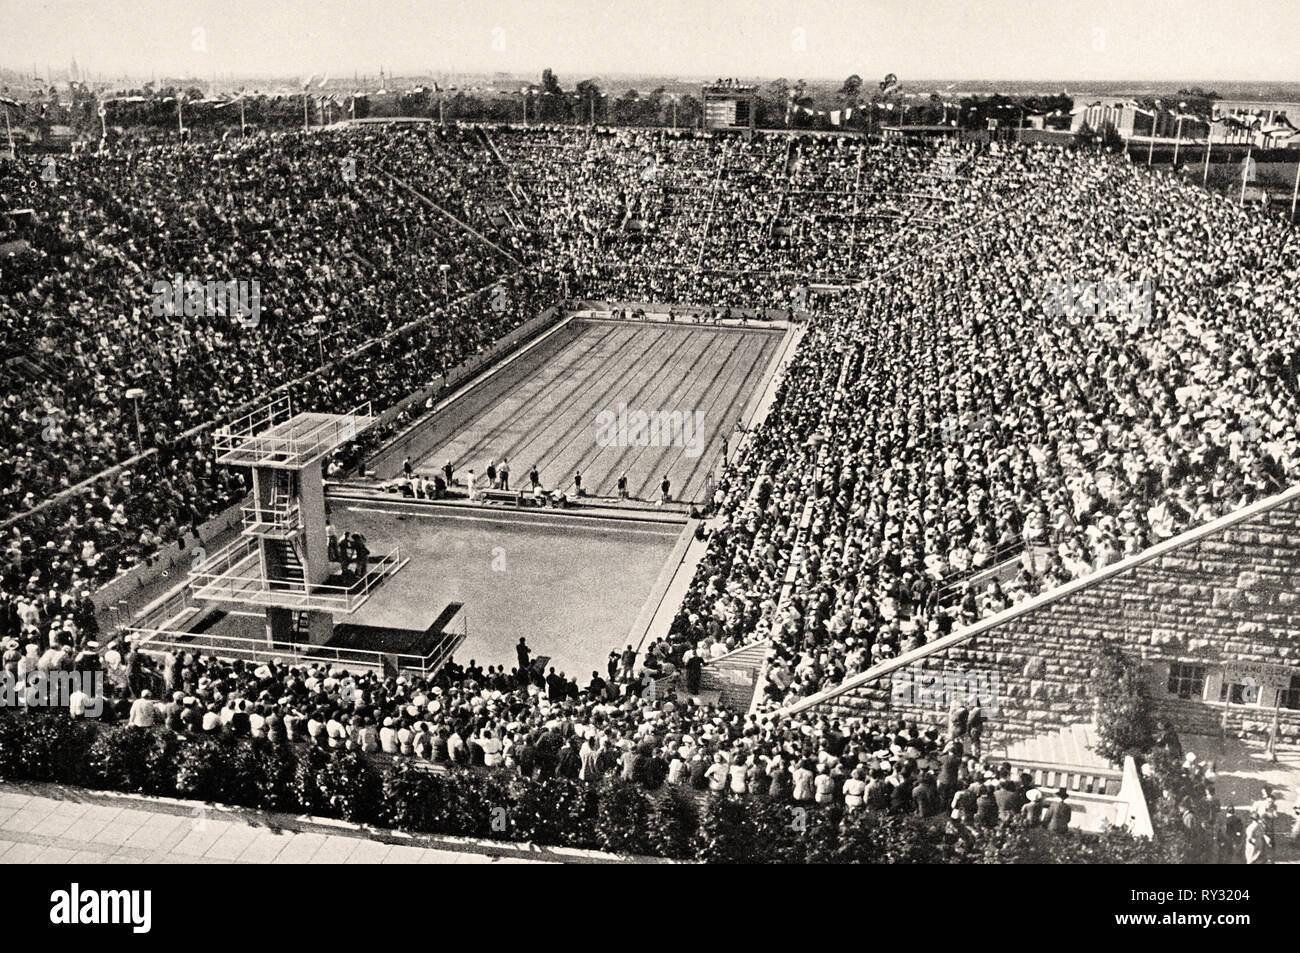 Jeux Olympiques de 1936 Berlin - le stade de natation au Jeux Olympiques de Berlin 1936 Banque D'Images